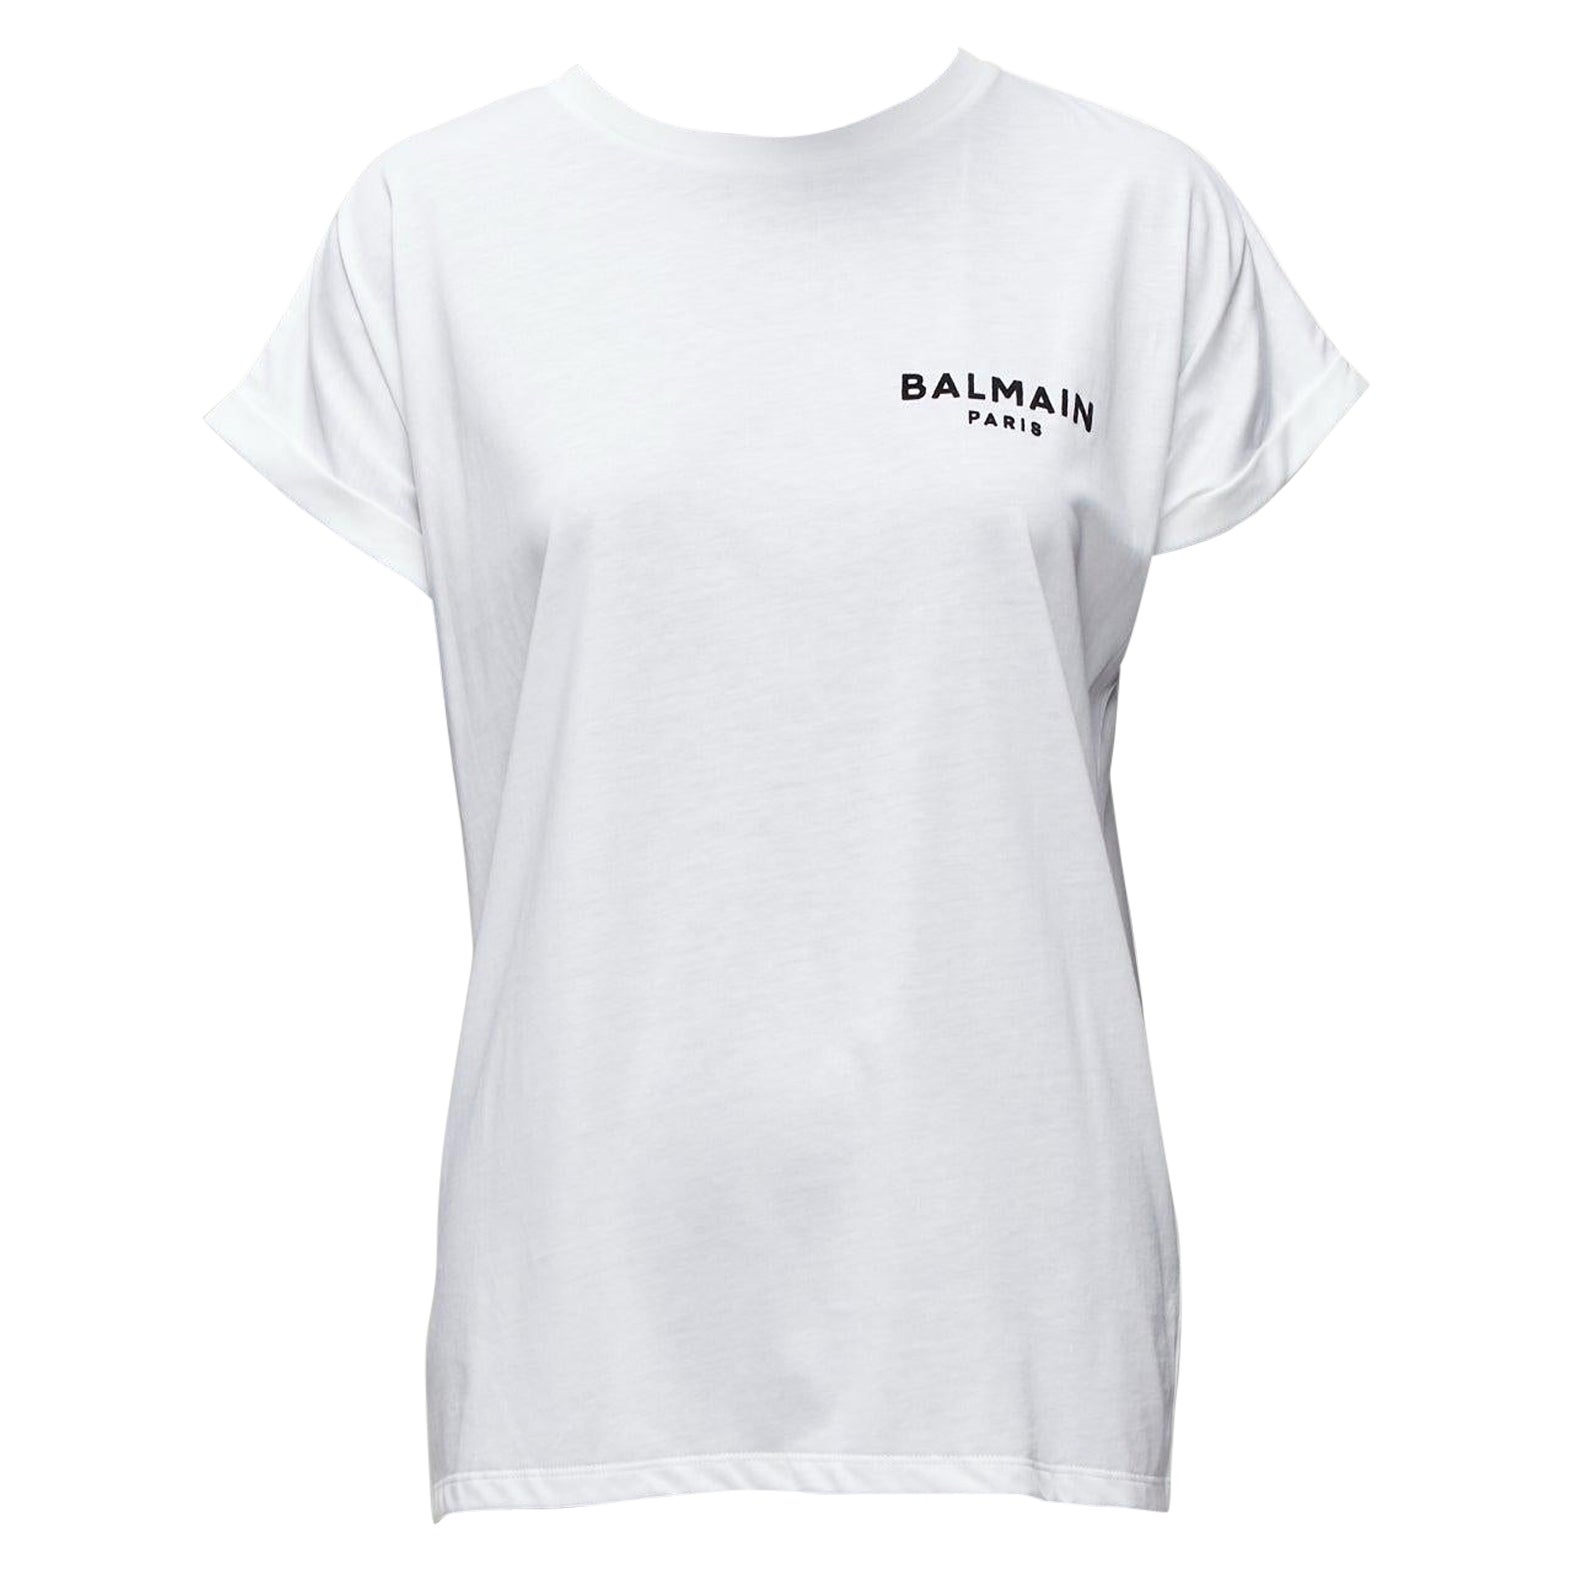 BALMAIN signature logo print cuffed sleeves white cotton tshirt XXS For Sale